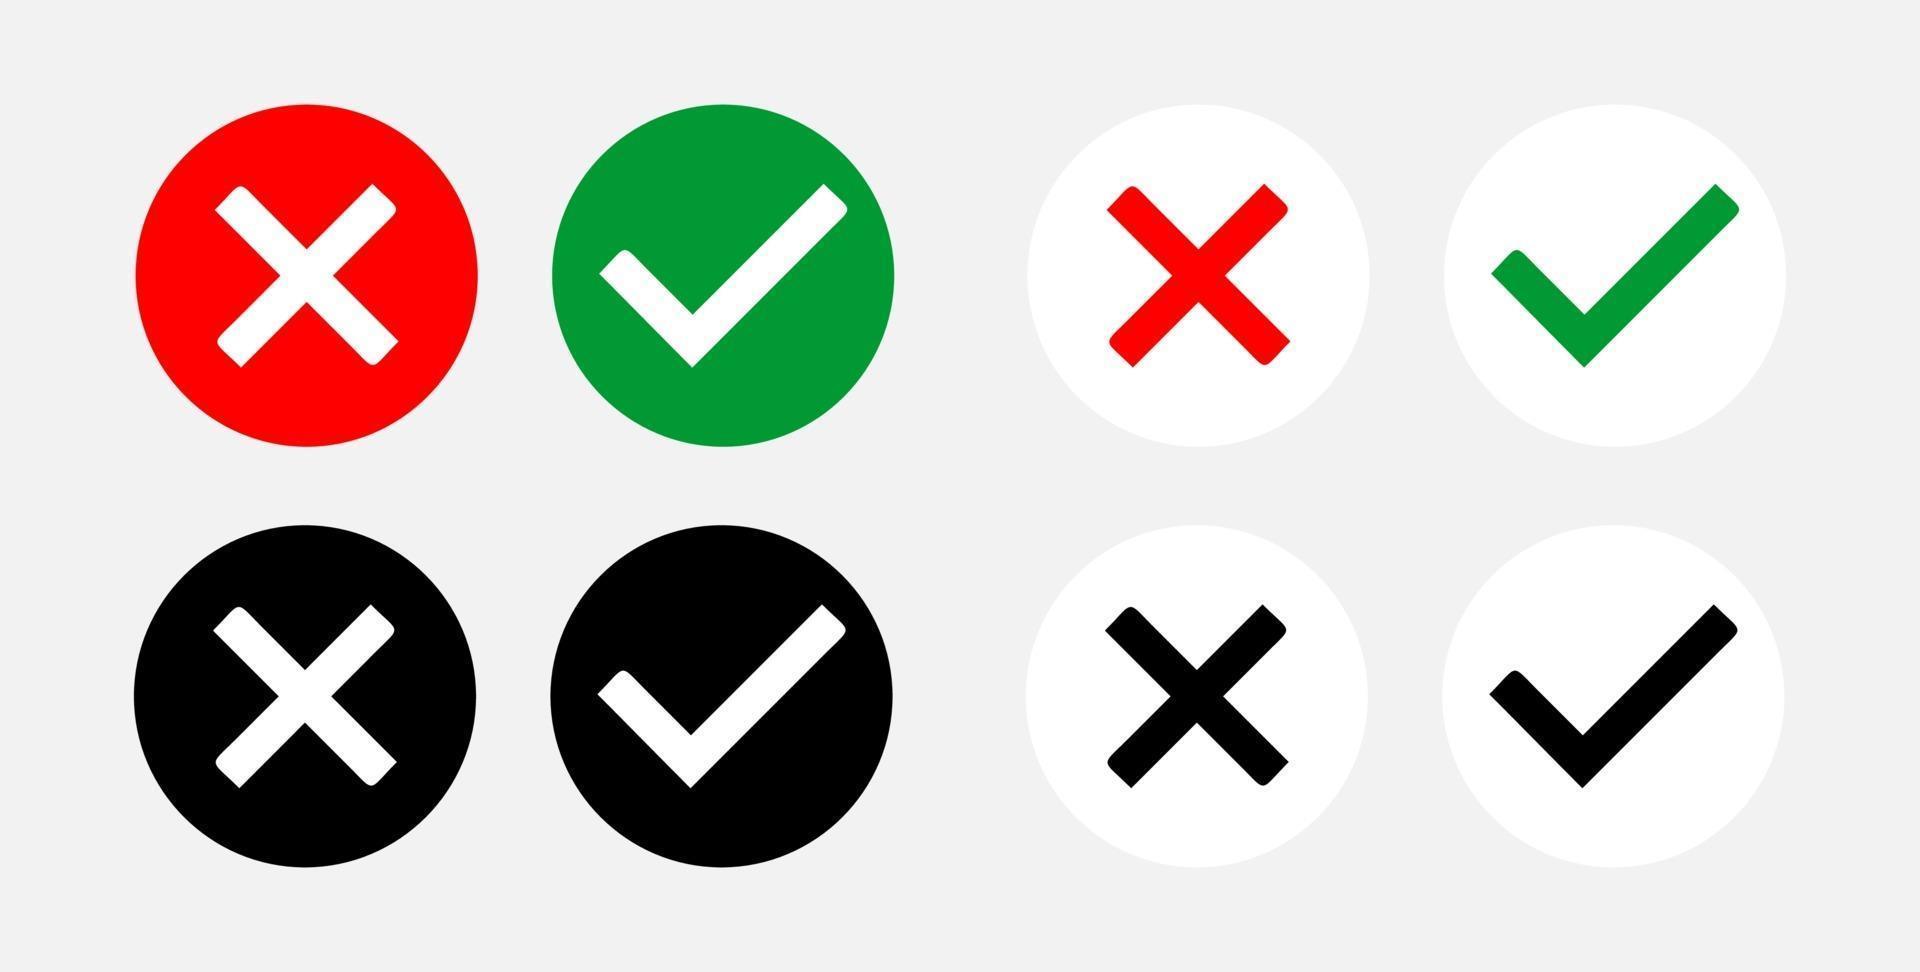 conjunto de iconos de sí y no o correctos e incorrectos o aprobados y rechazados con marca de verificación y símbolos cruzados. imagen vectorial. vector